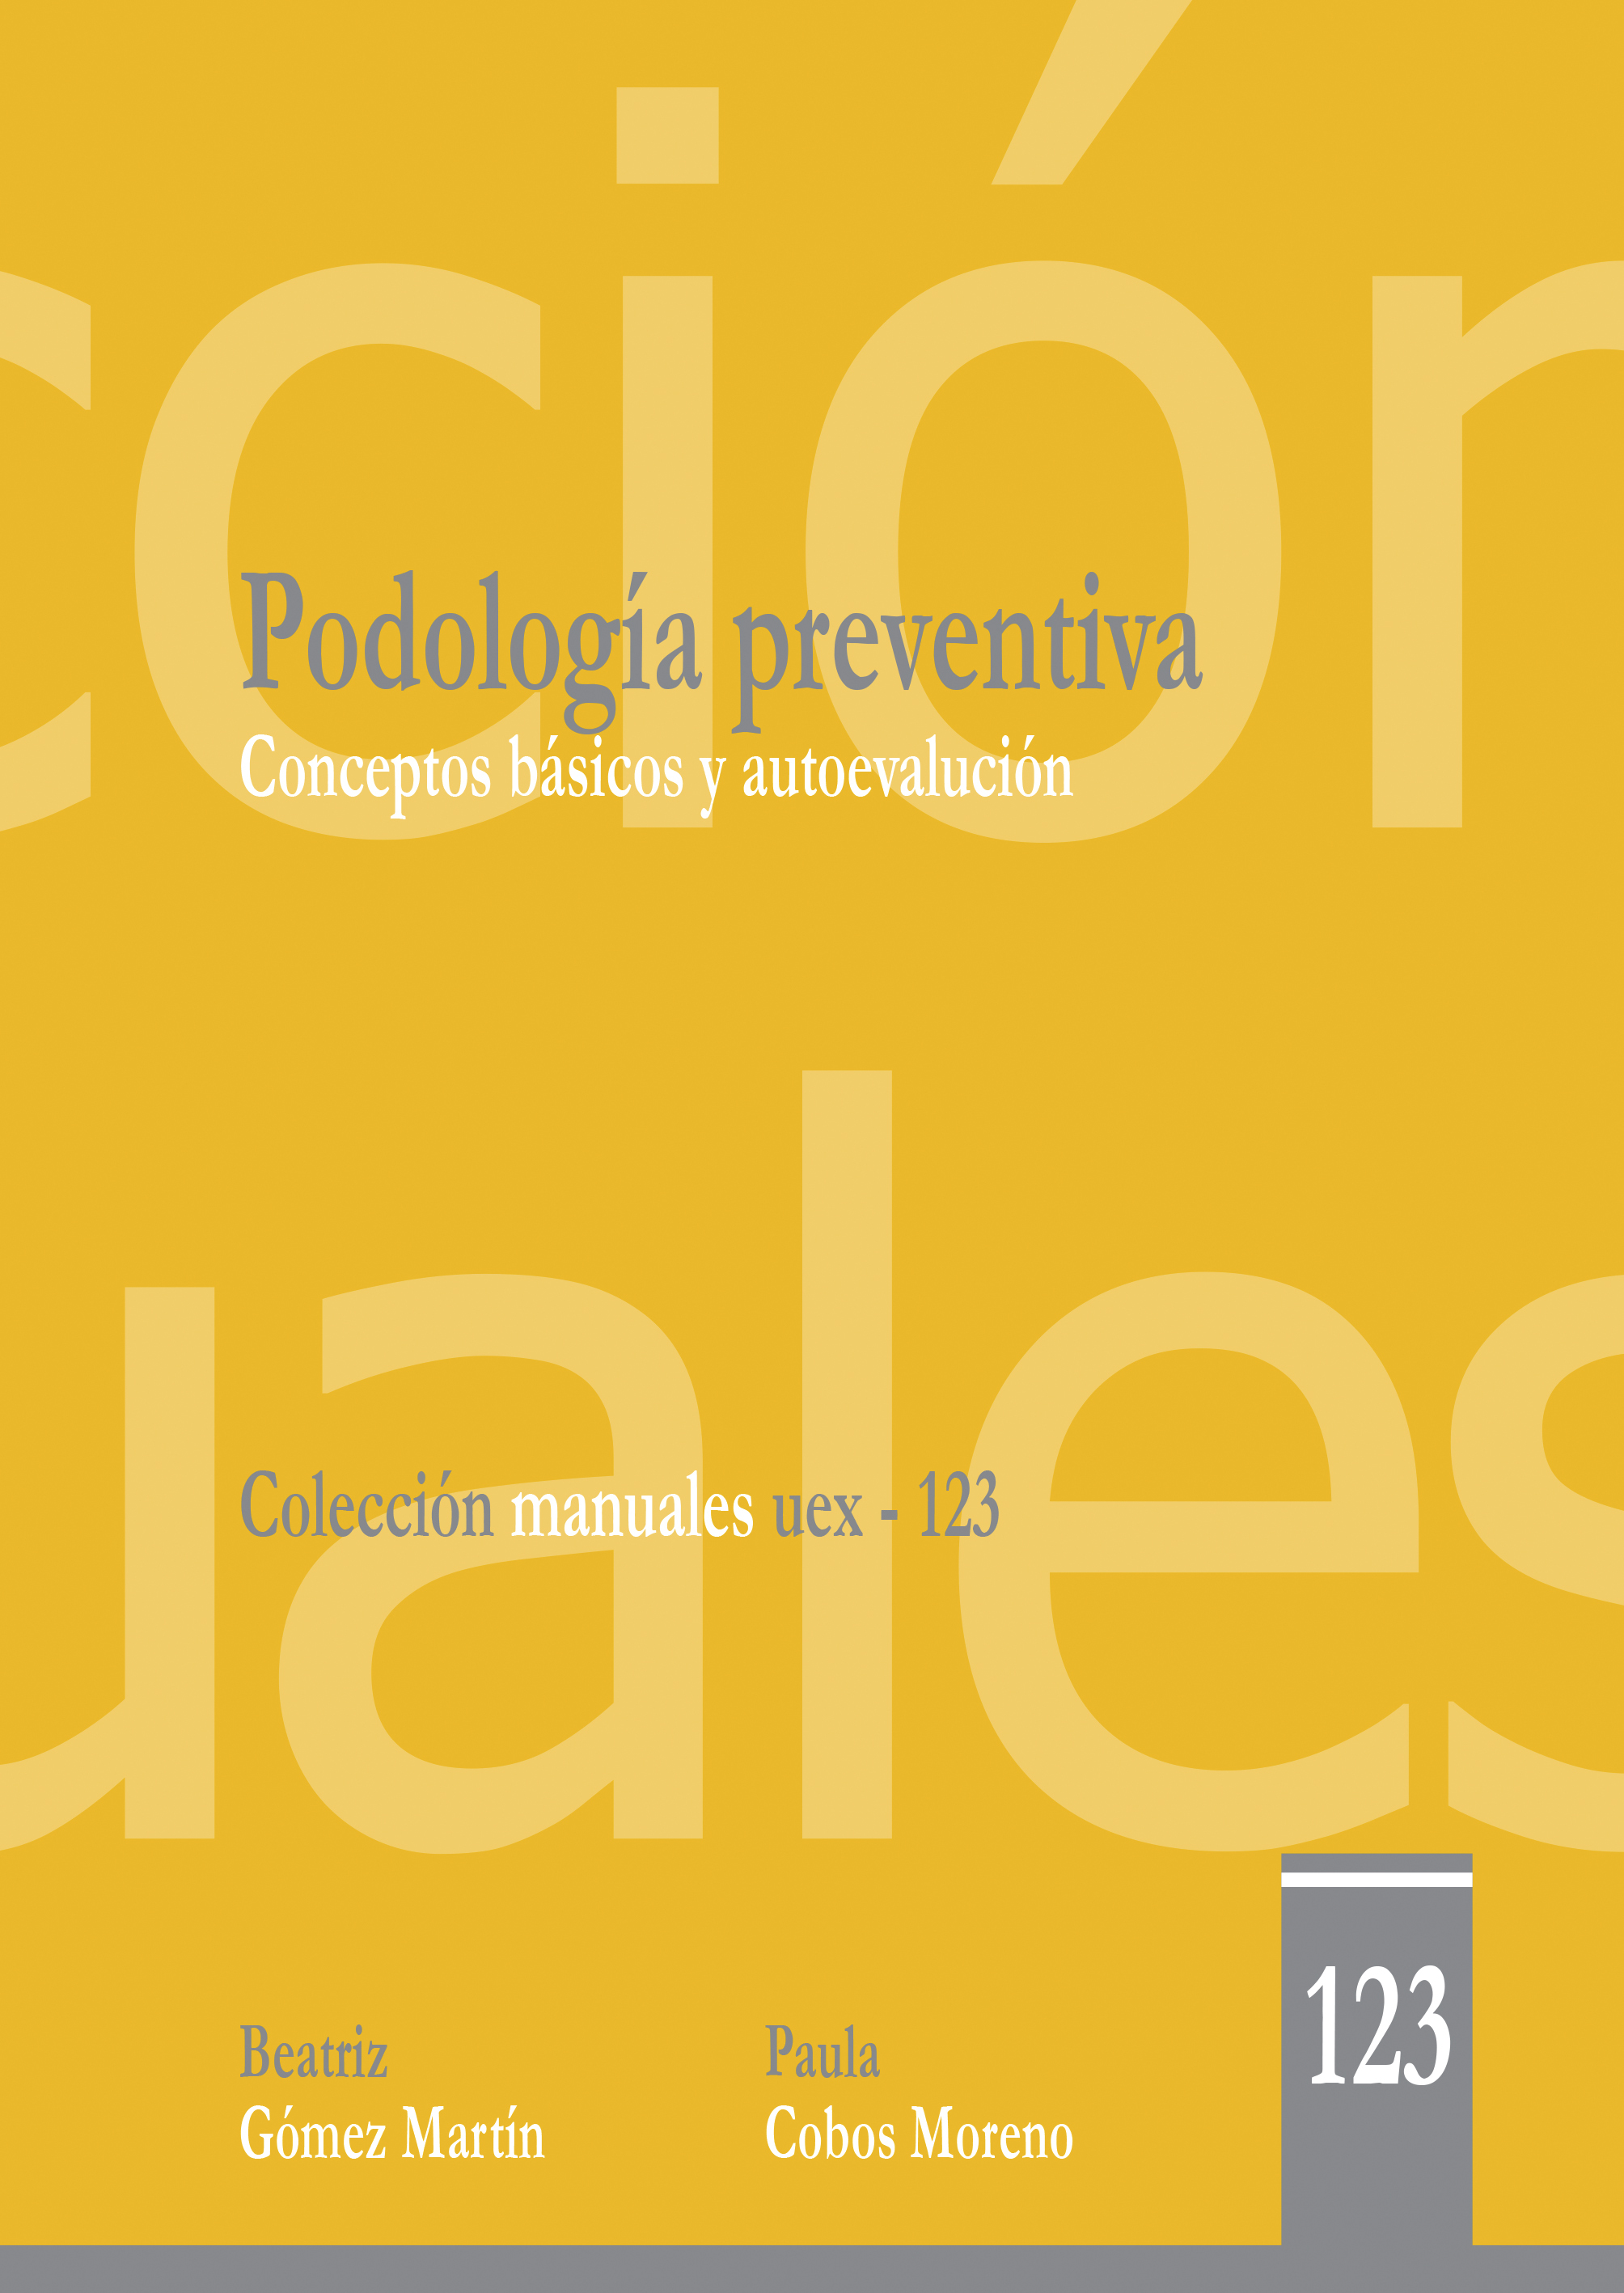 Imagen de portada del libro Podología preventiva